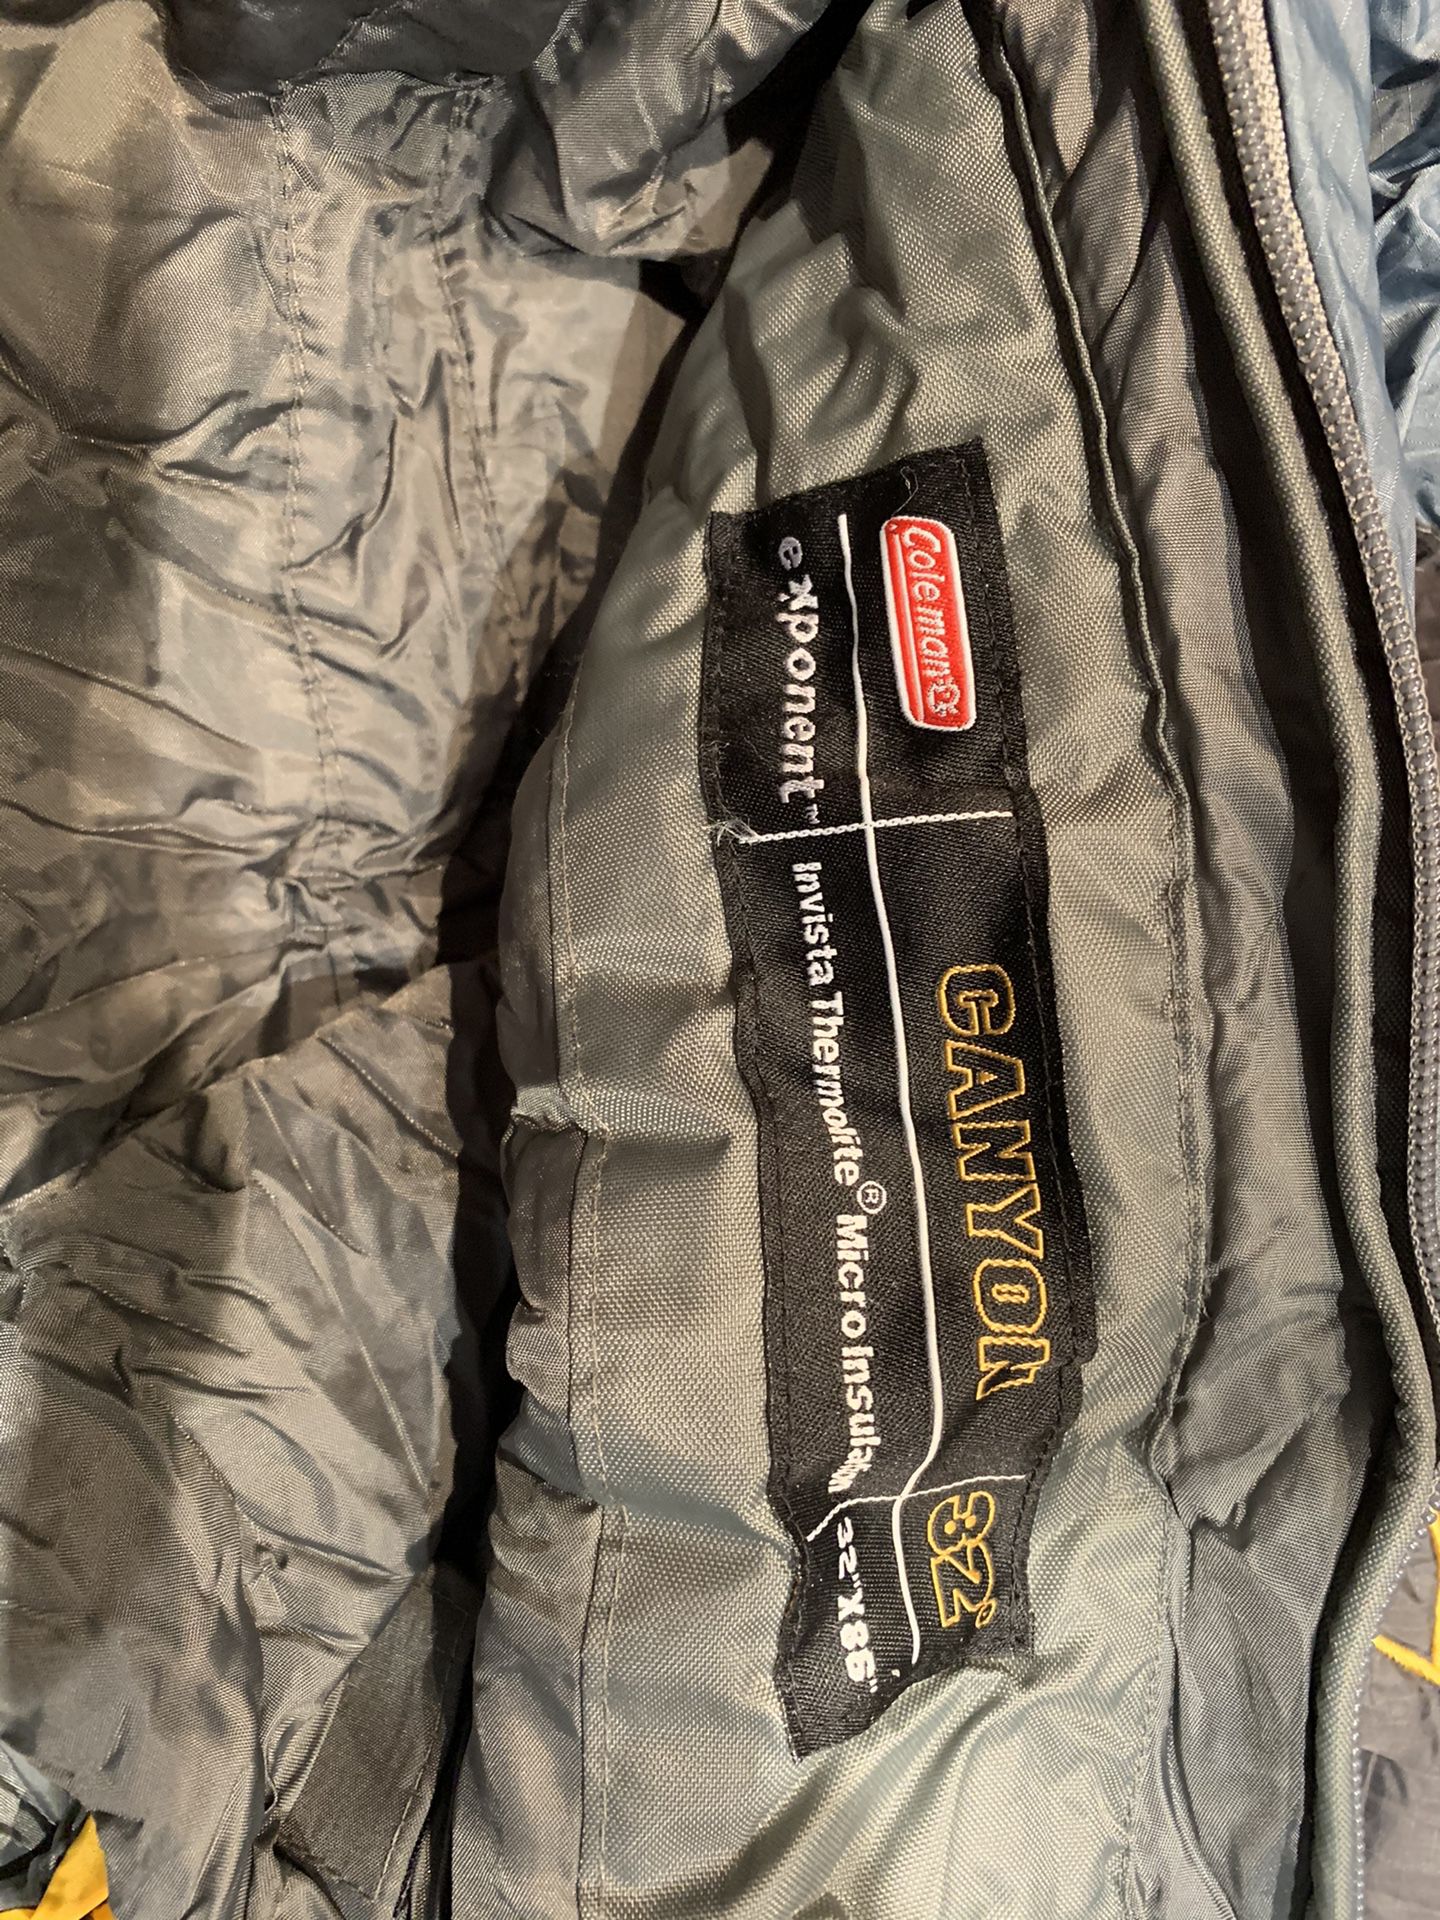 Coleman thermolite sleeping bag and stuff sack